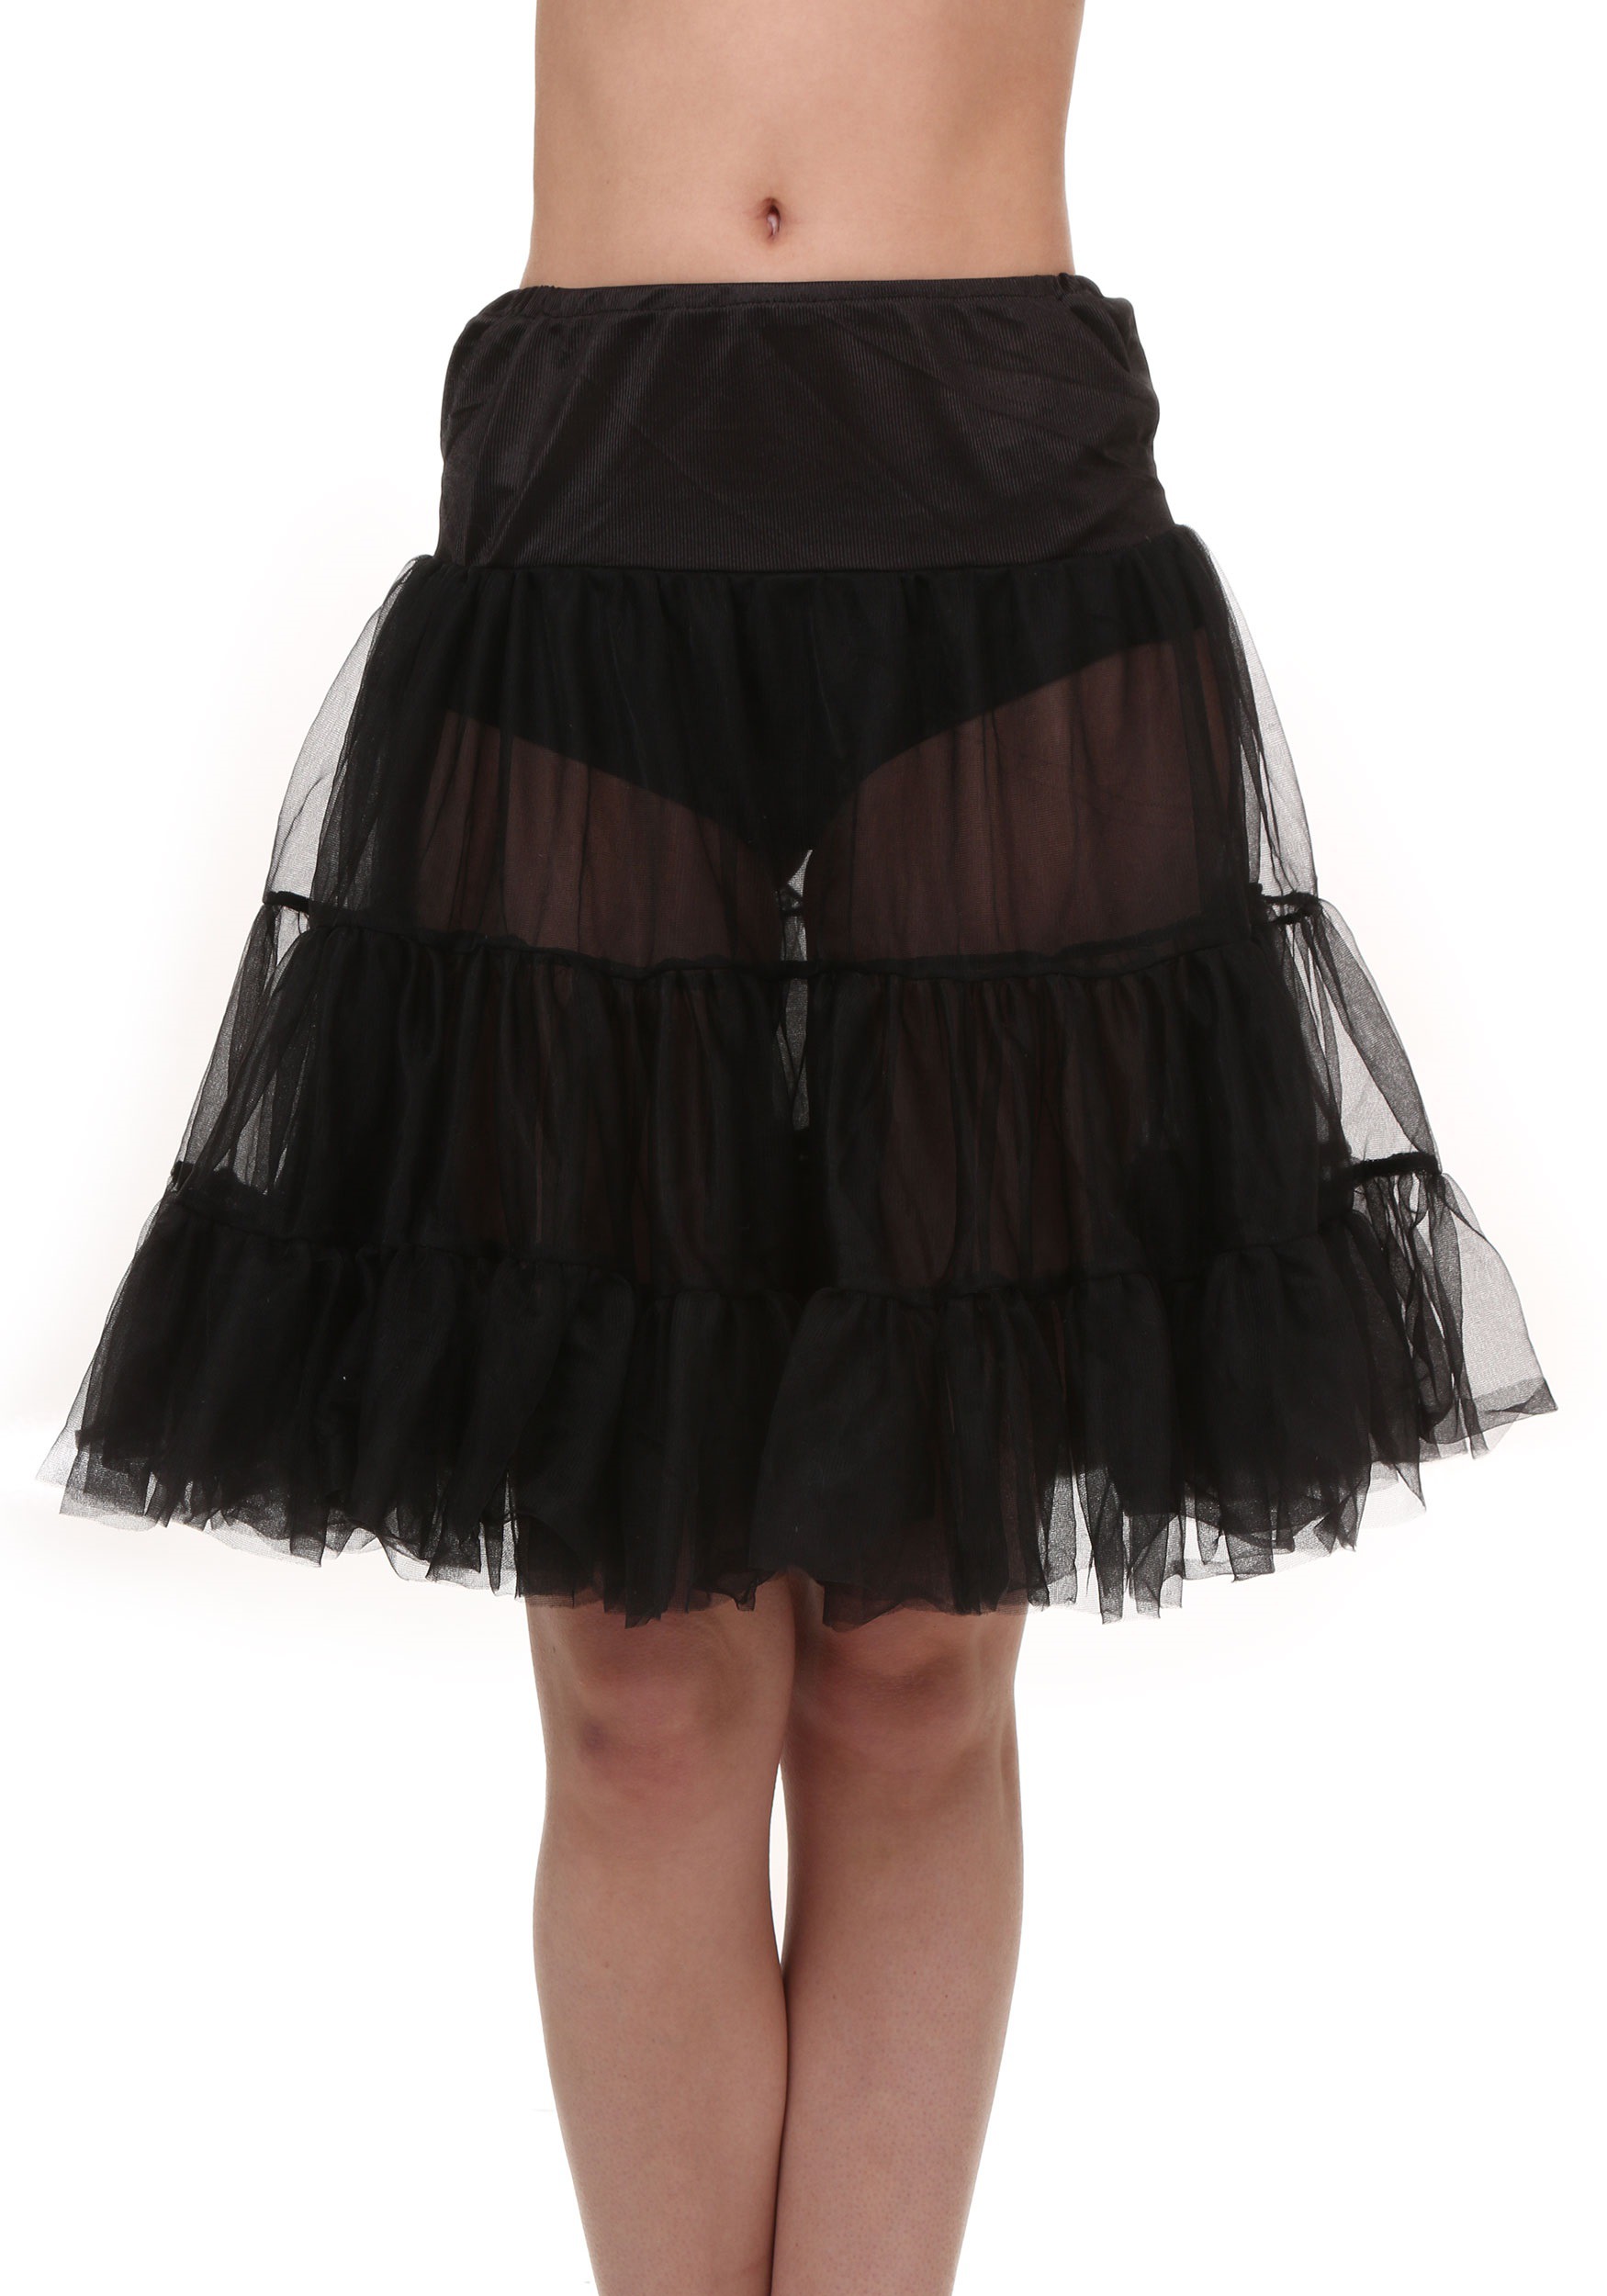 Plus Size Black Knee Length Crinoline Skirt